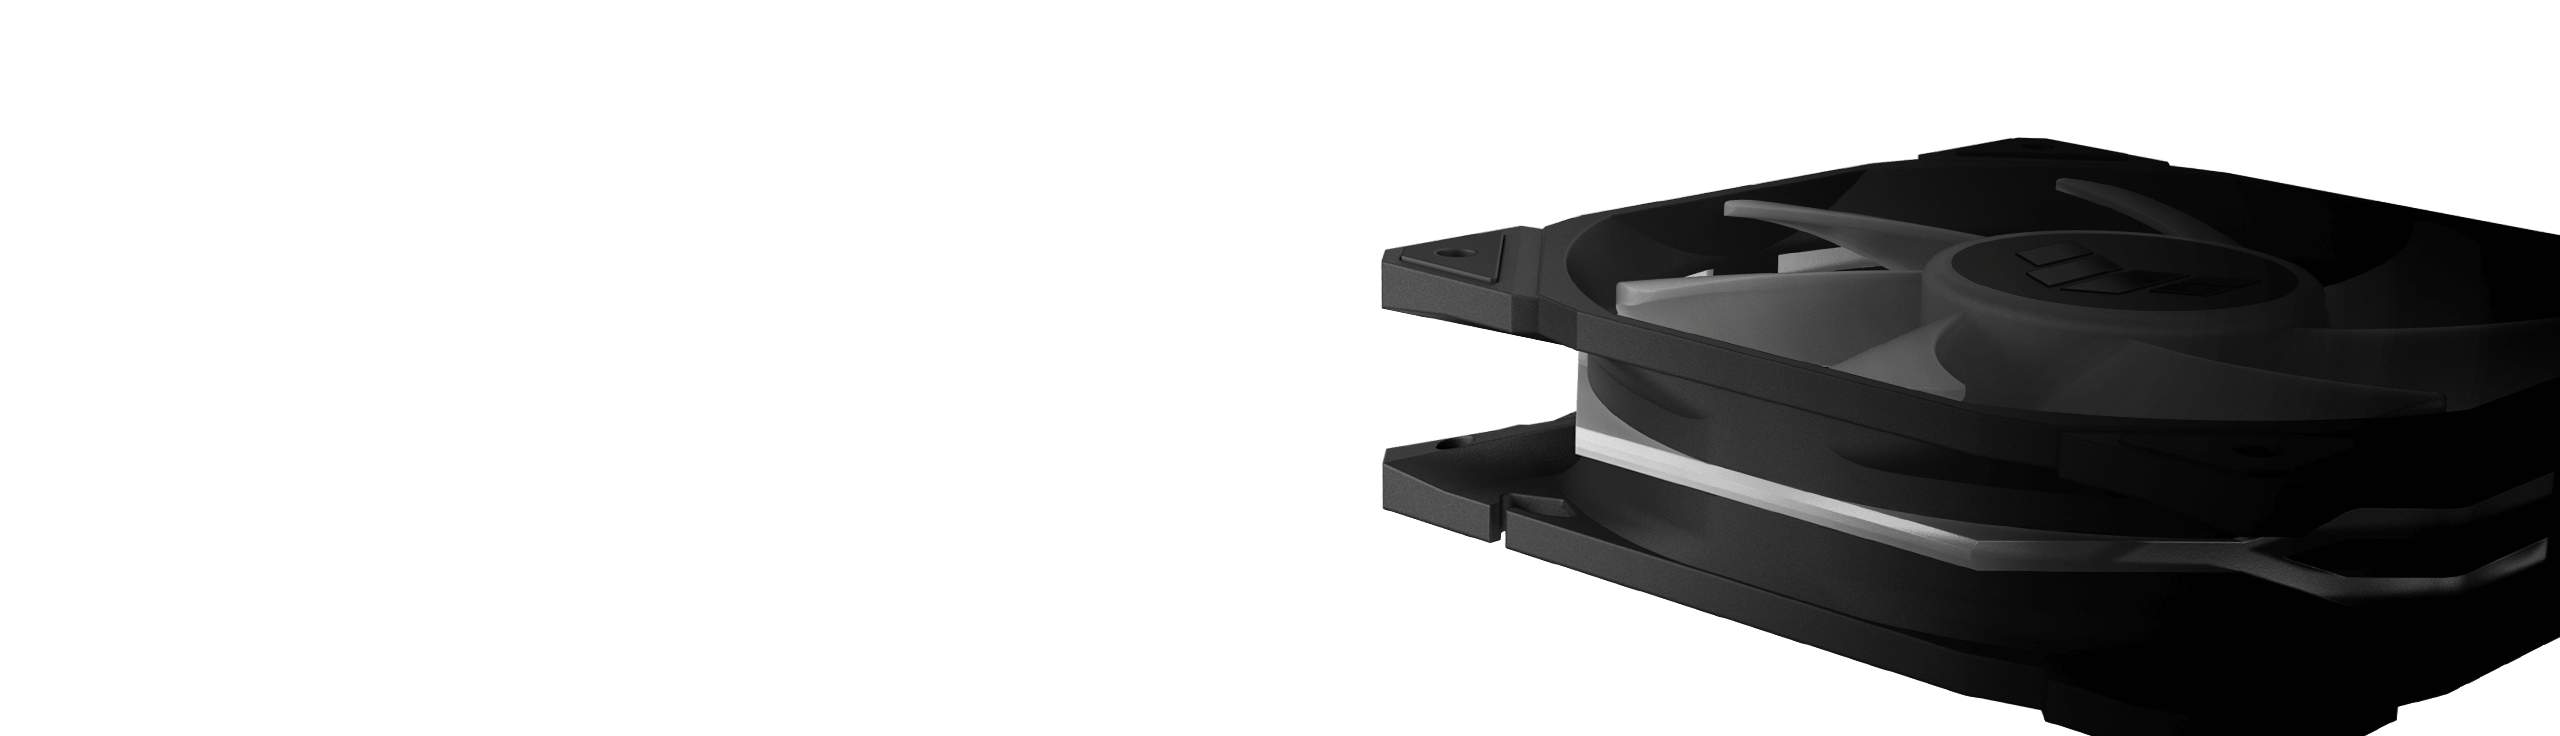 Az ASUS TUF Gaming TR120 ARGB Reverse extra vastag, 28 mm-es keretének összehasonlítása más 25 mm-es ventilátorházakkal